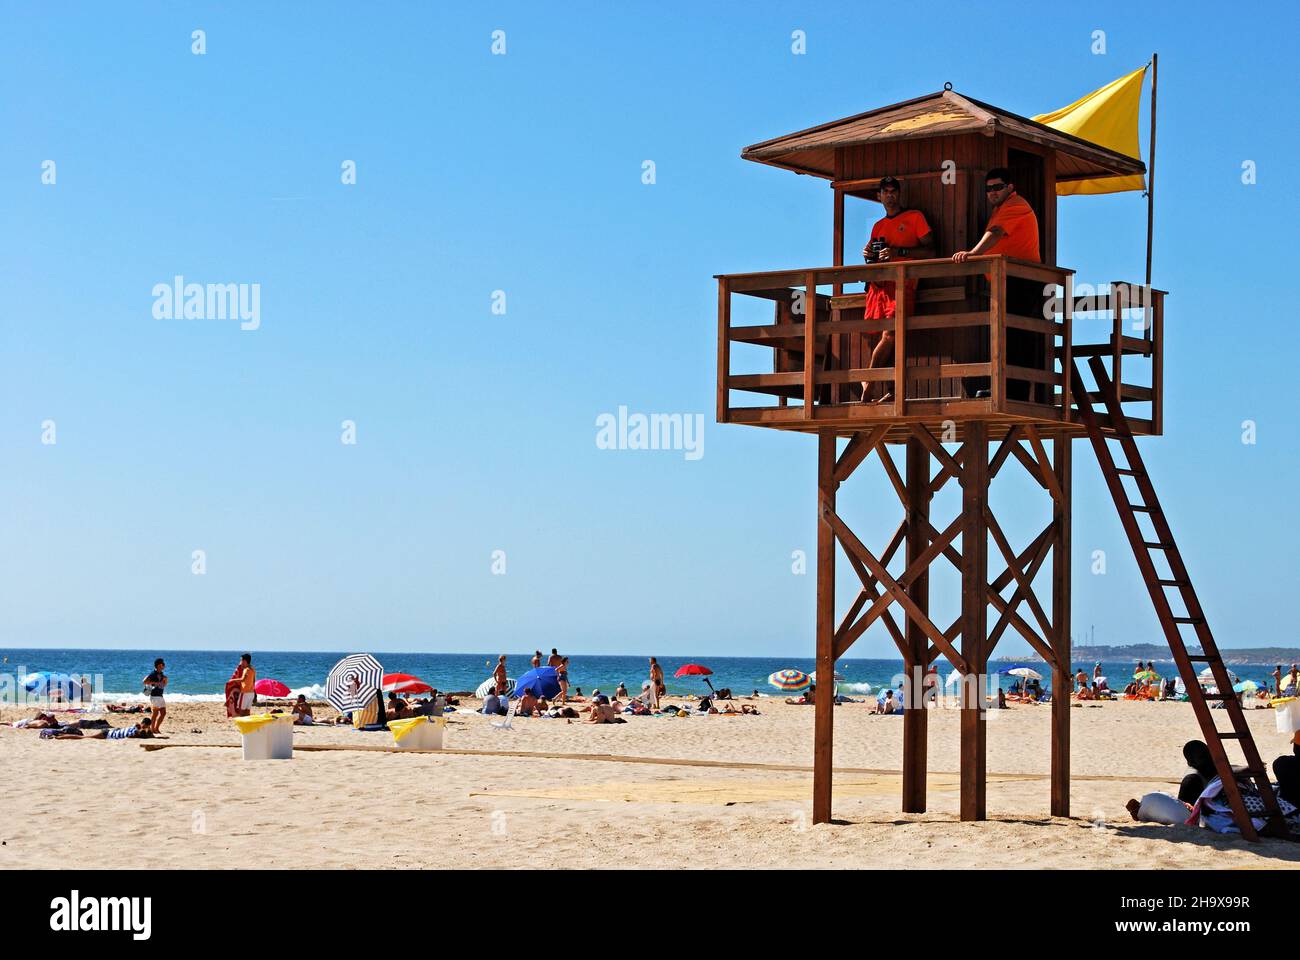 Socorristas en una torre de madera en la playa con turistas disfrutando del entorno, Conil de la Frontera, España. Foto de stock